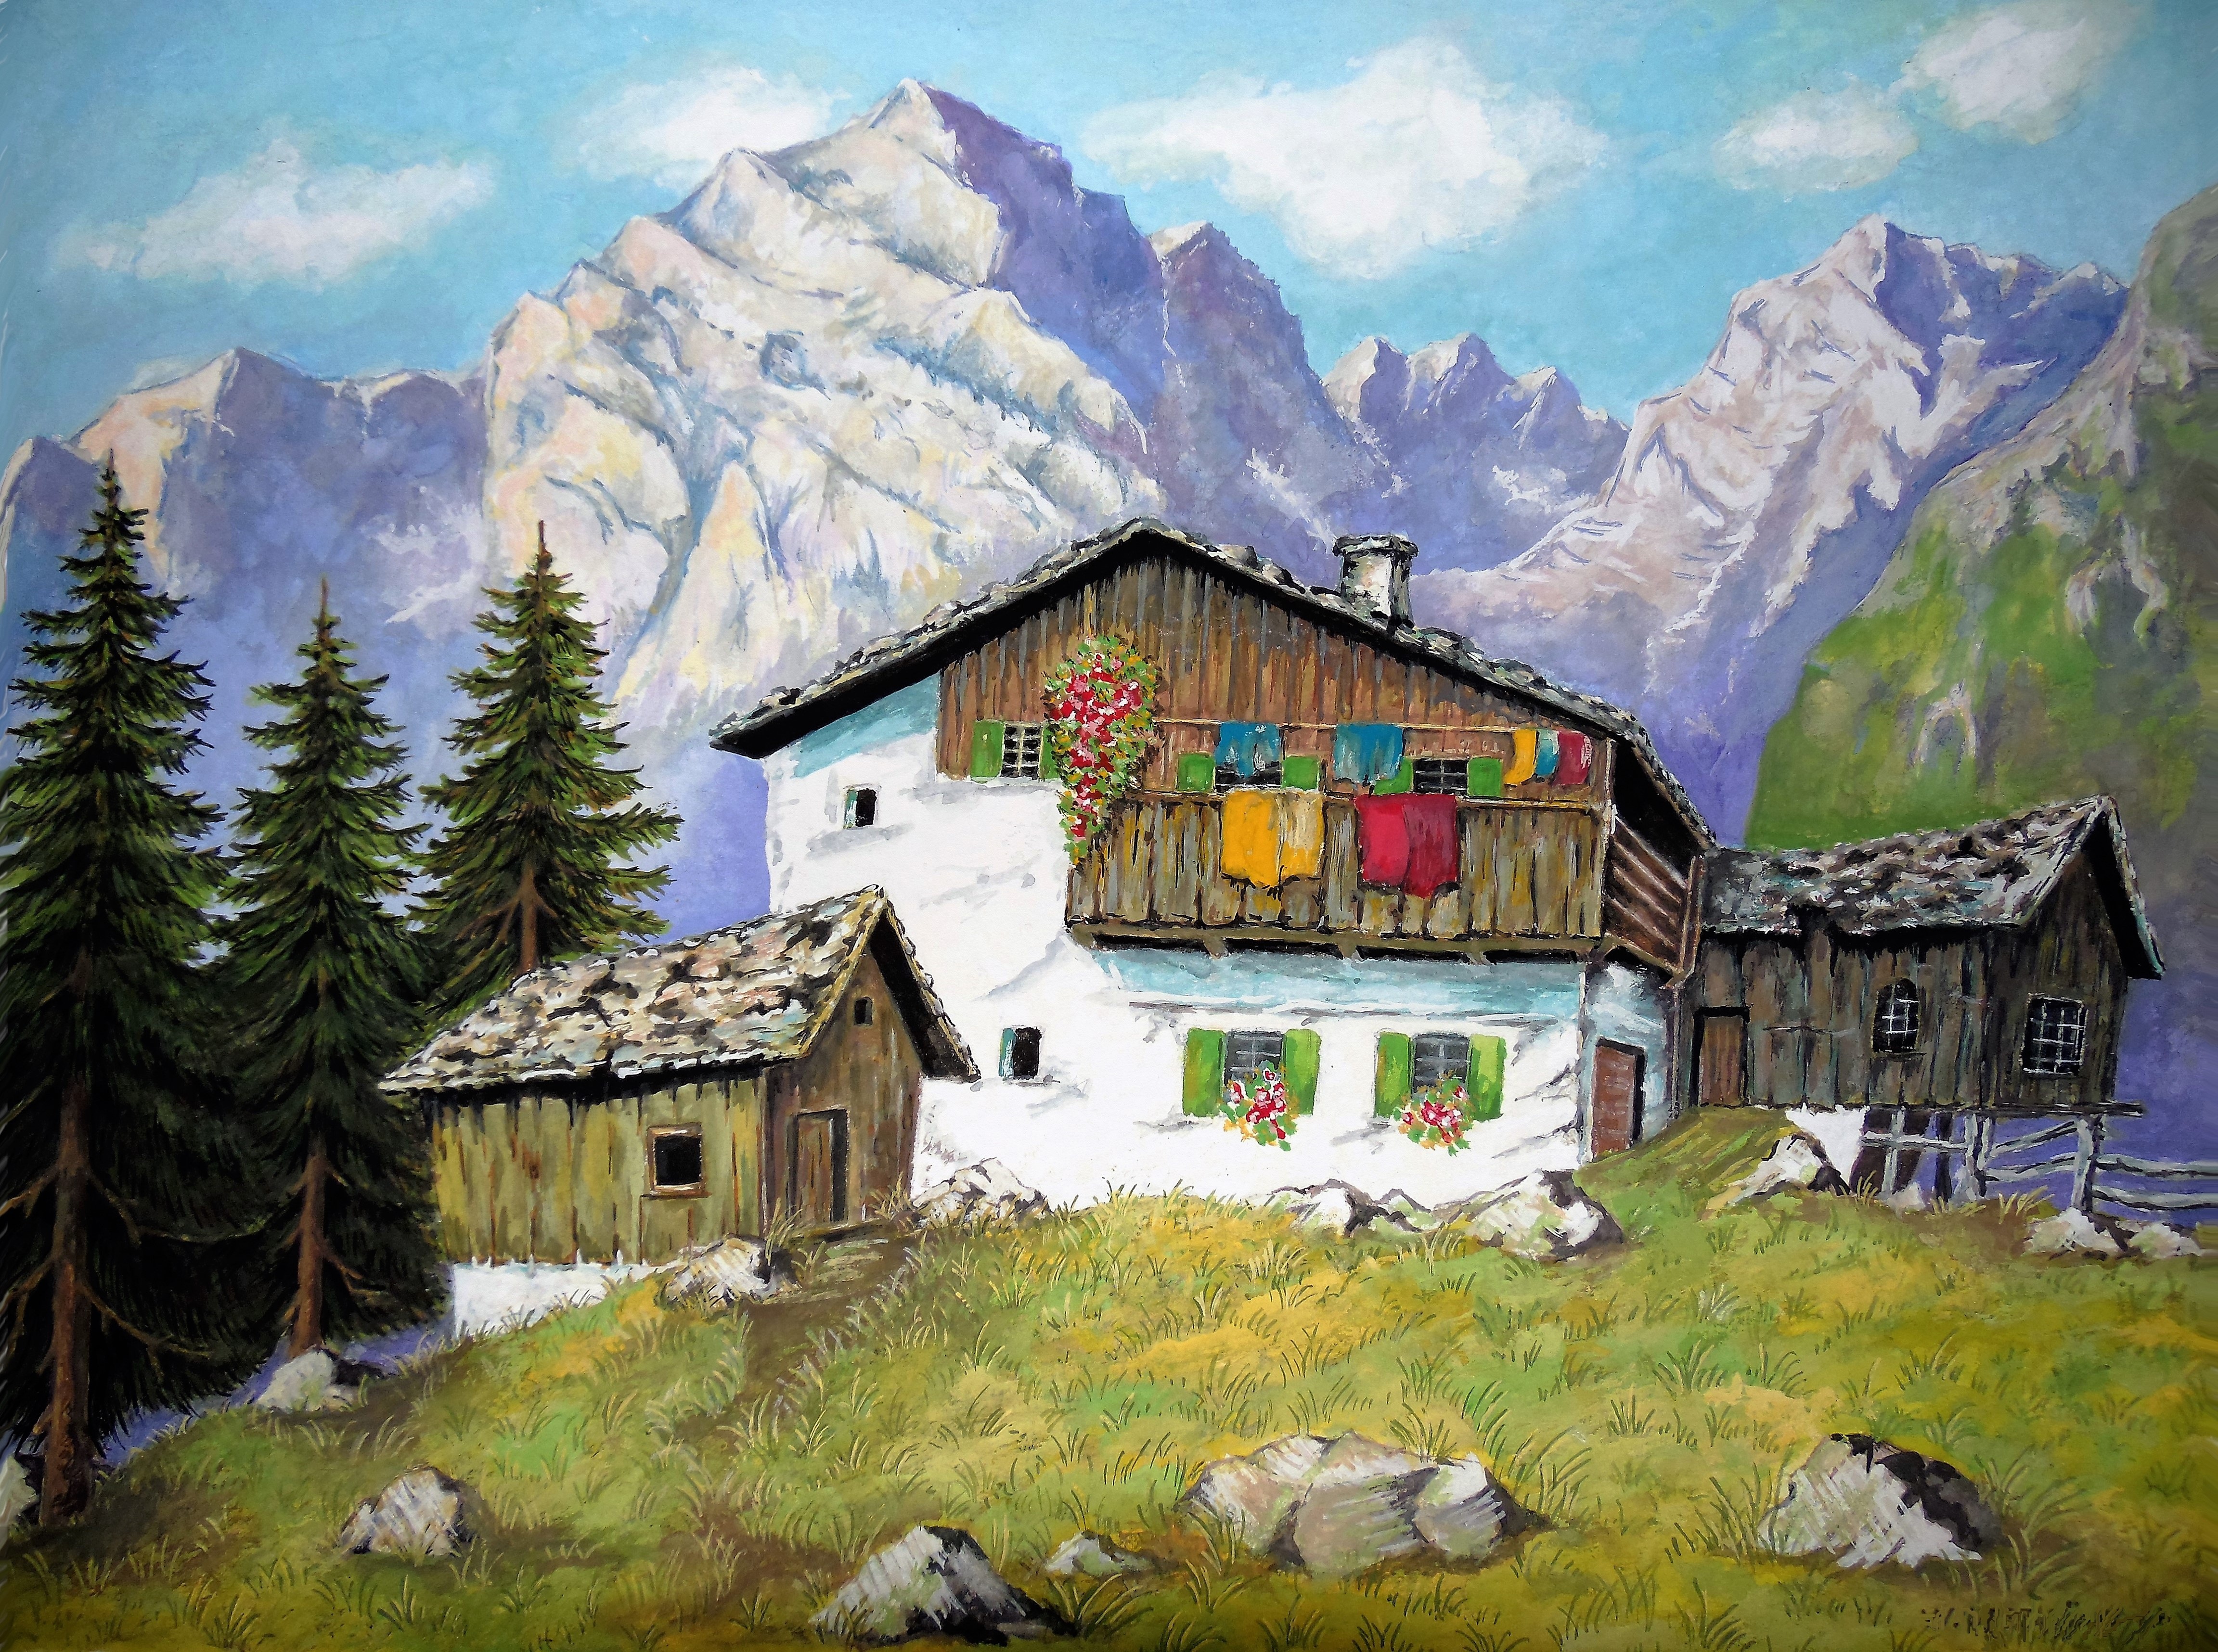 дом в горах кавказа